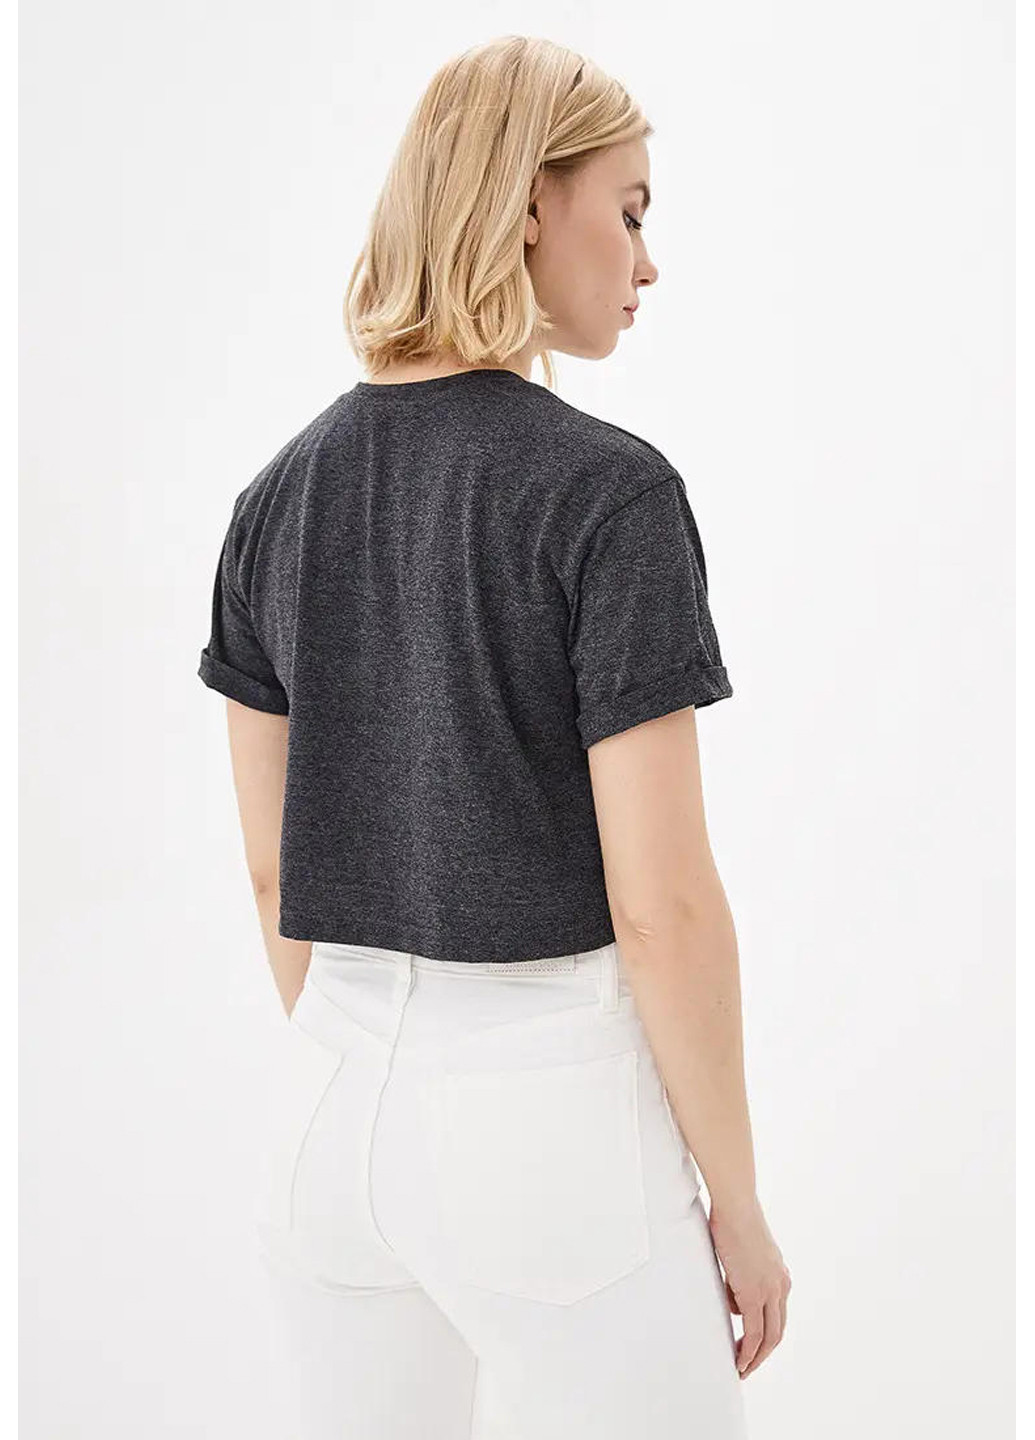 Темно-серая летняя женская укороченная футболка, топ Sport Line